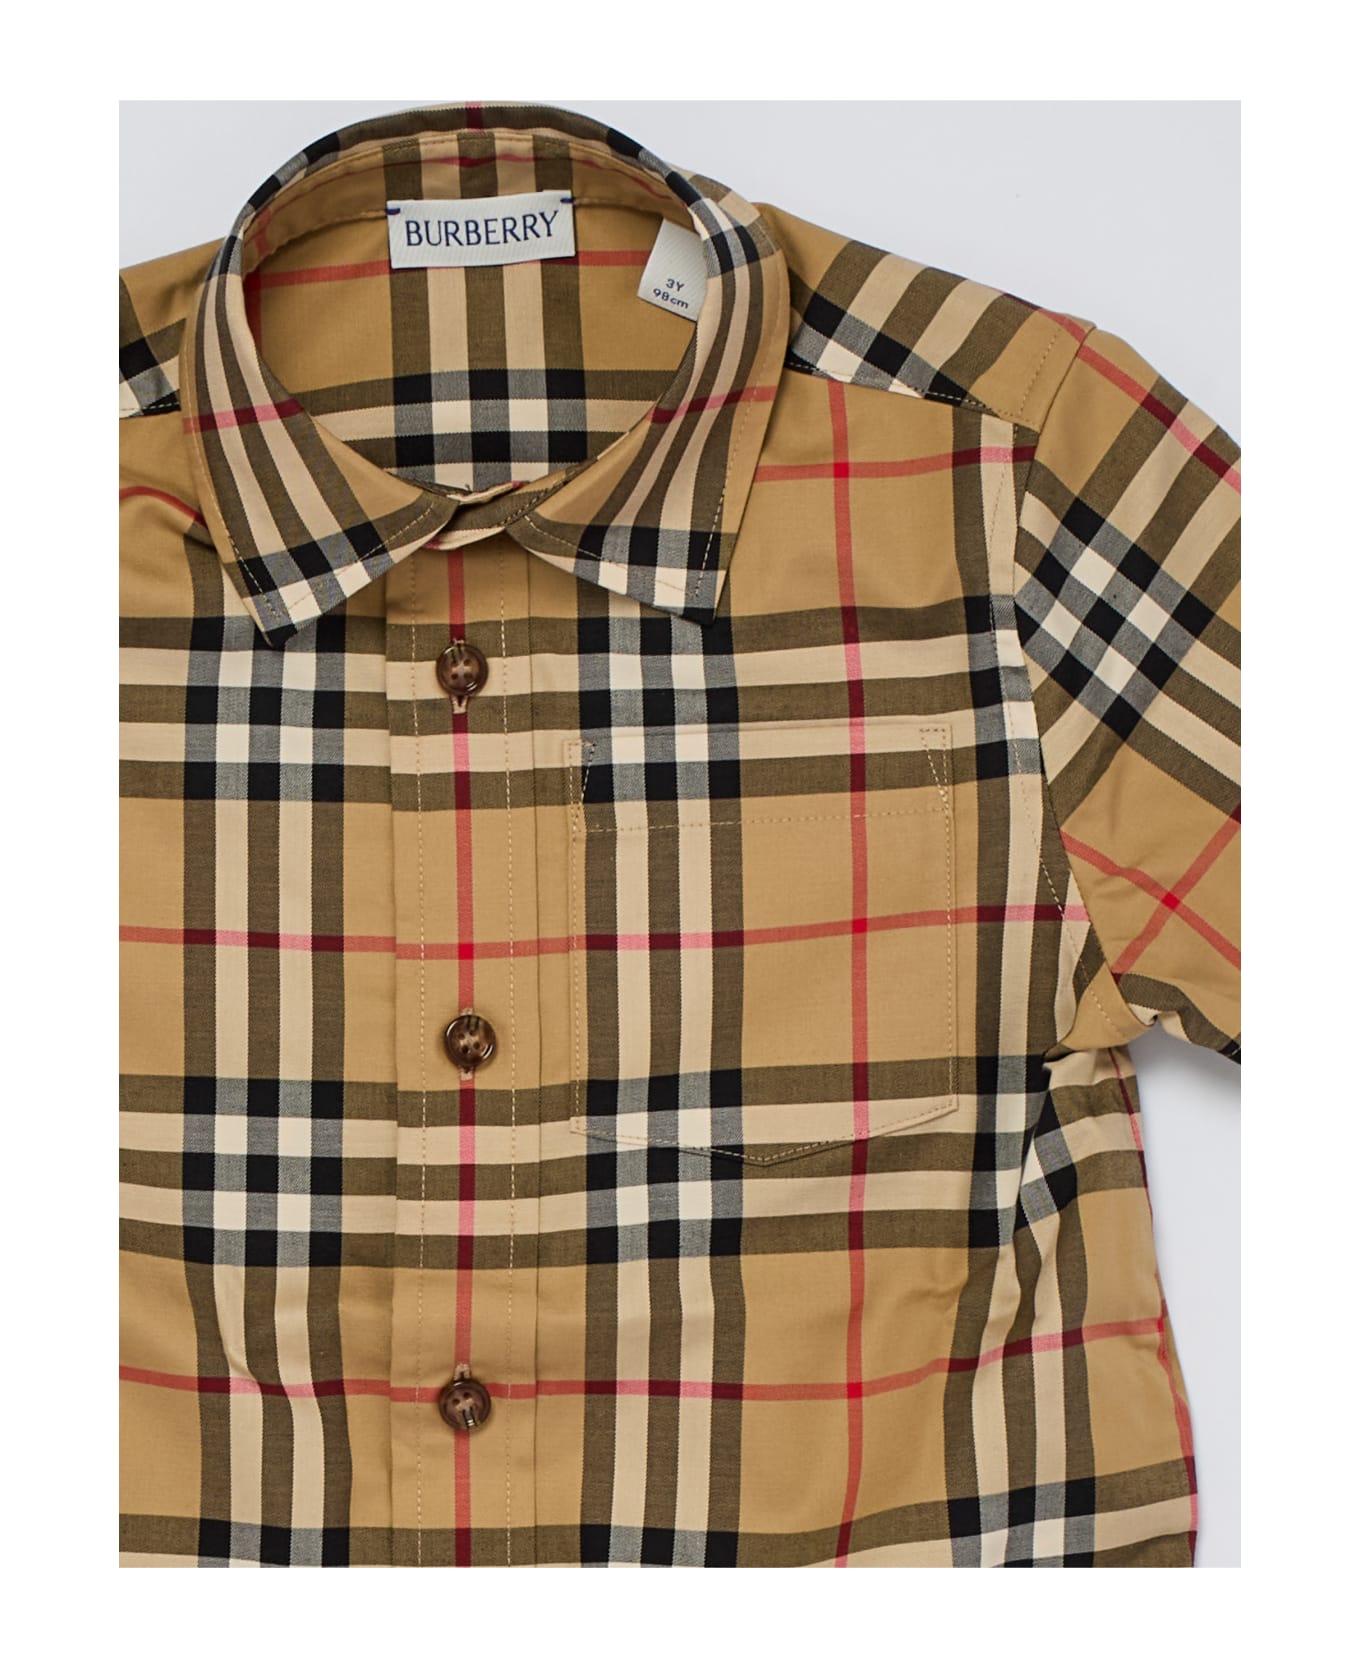 Burberry Owen Shirt Shirt - CHECK BEIGE